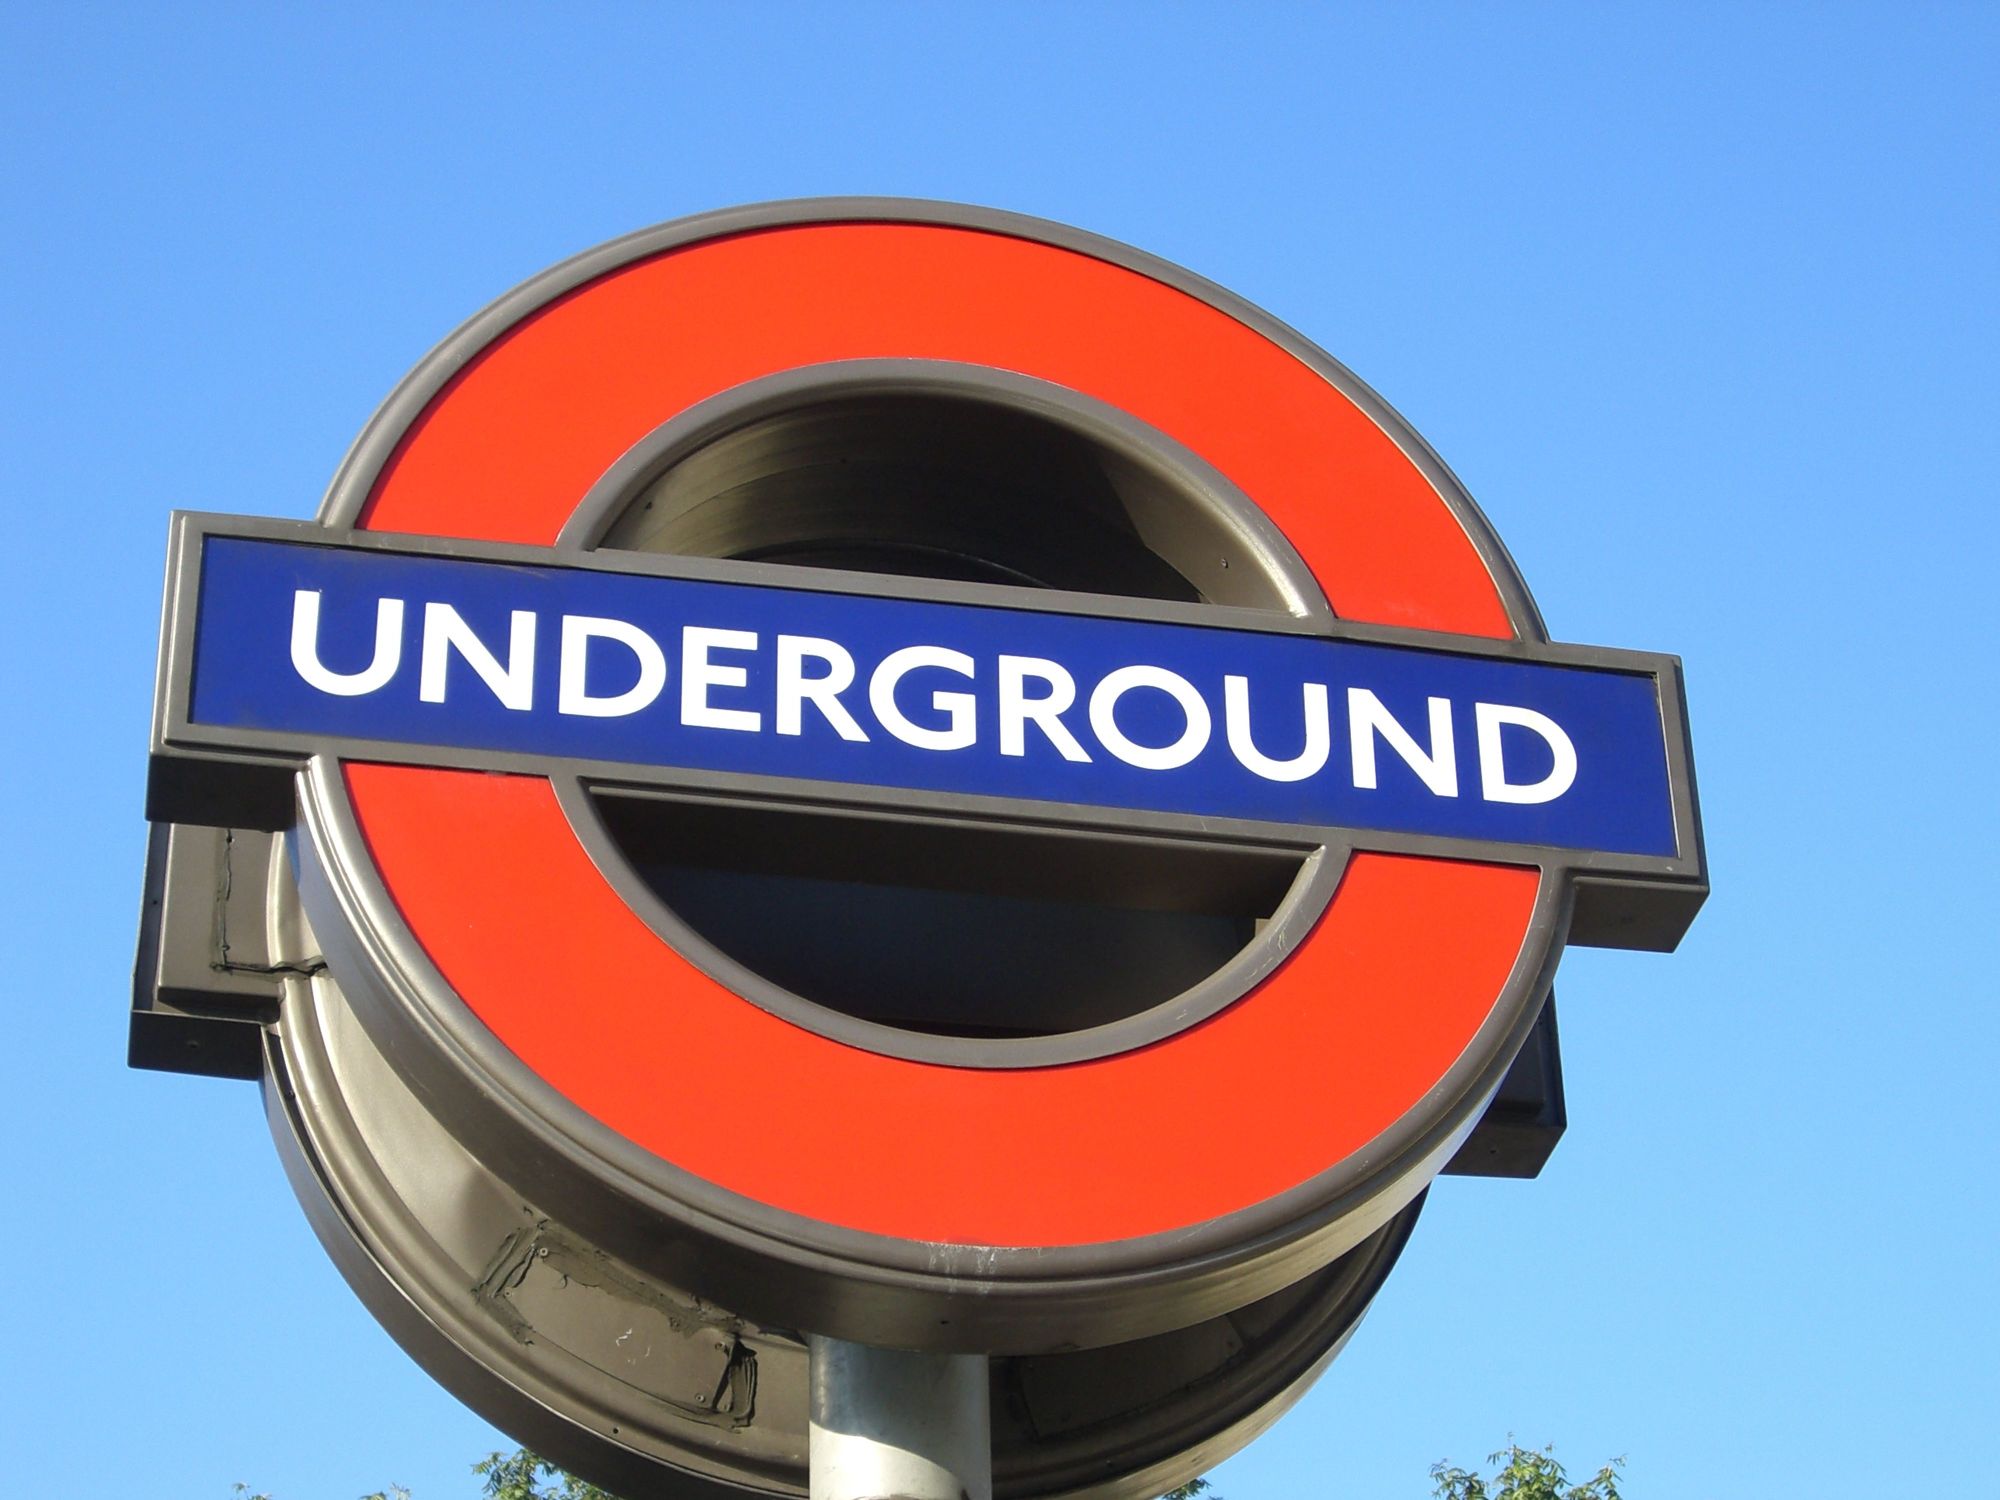 Bild mit Städte, London, Stadt, City, Verkehr, Stadtleben, Bahnen, Grossstadt, traffic, London Underground, Underground sign